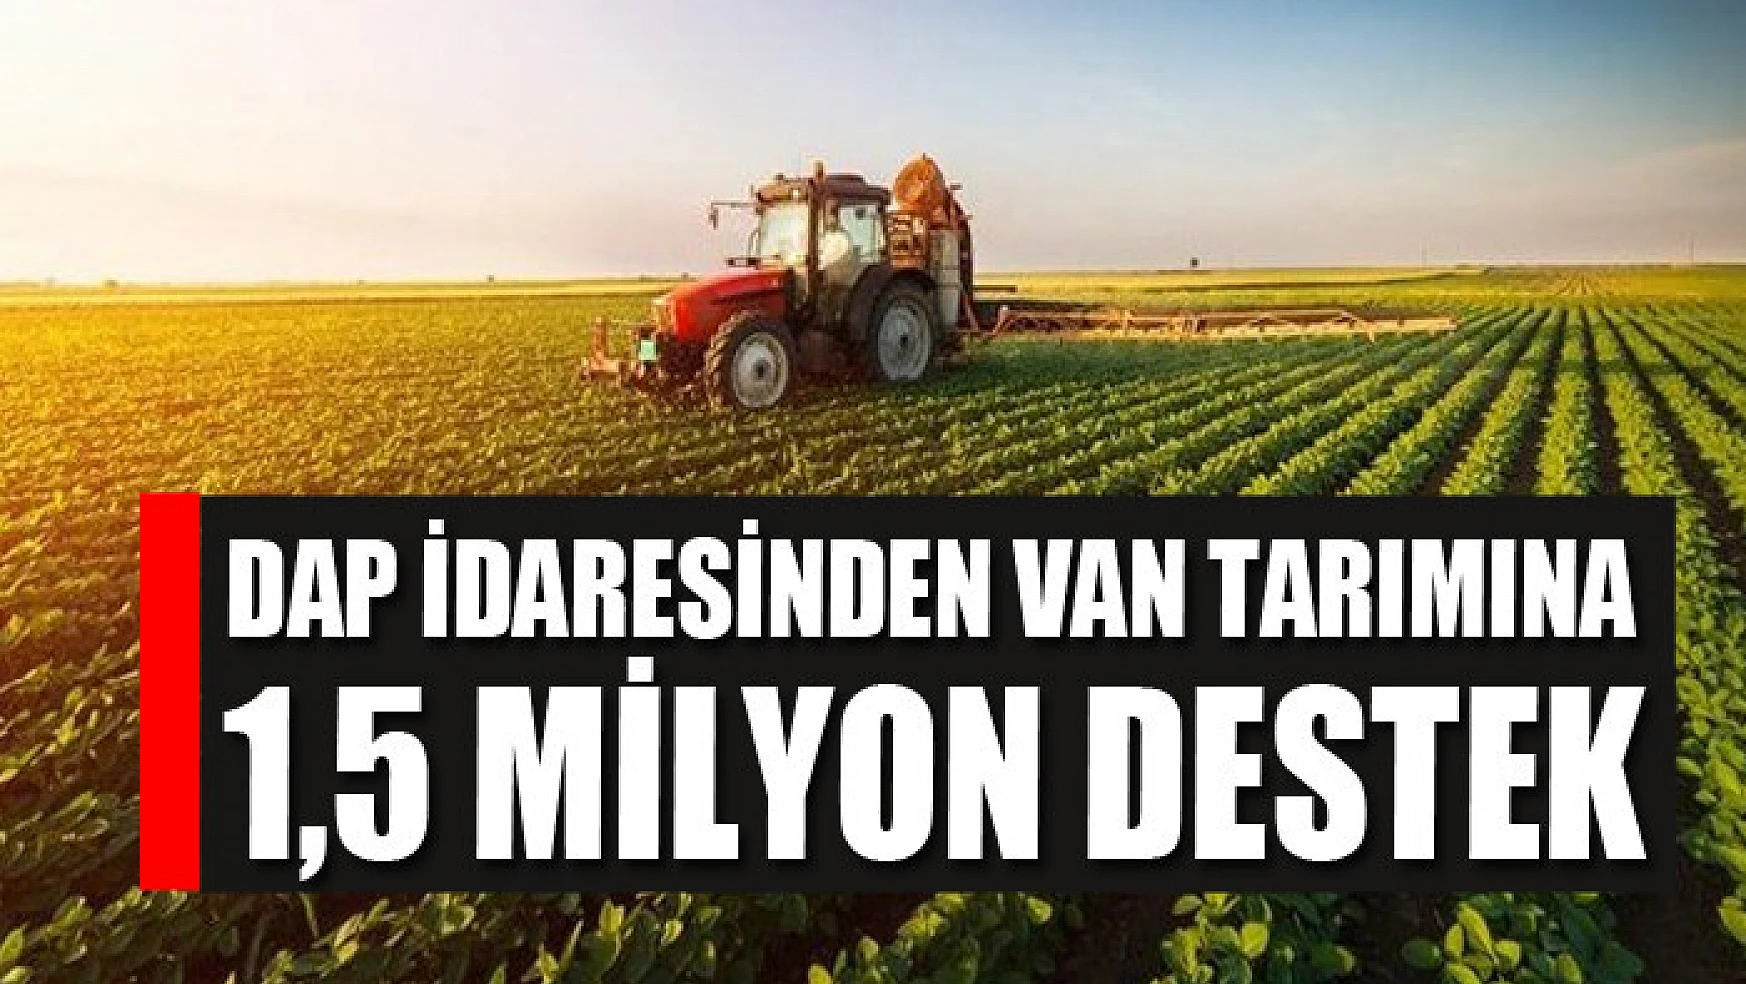 DAP İdaresinden Van tarımına 1,5 milyon destek